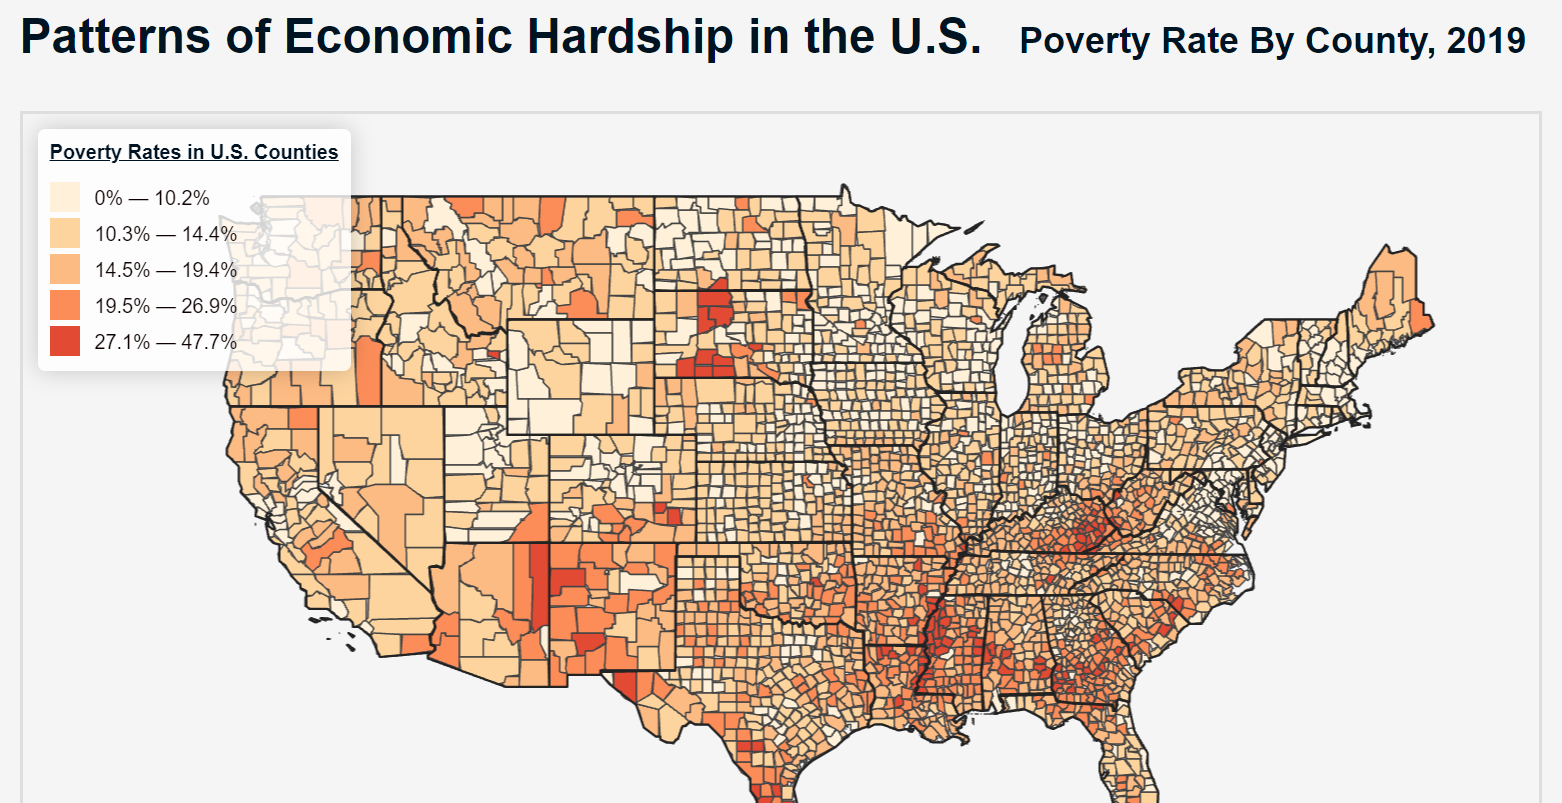 Economic Hardship in the U.S., 2019